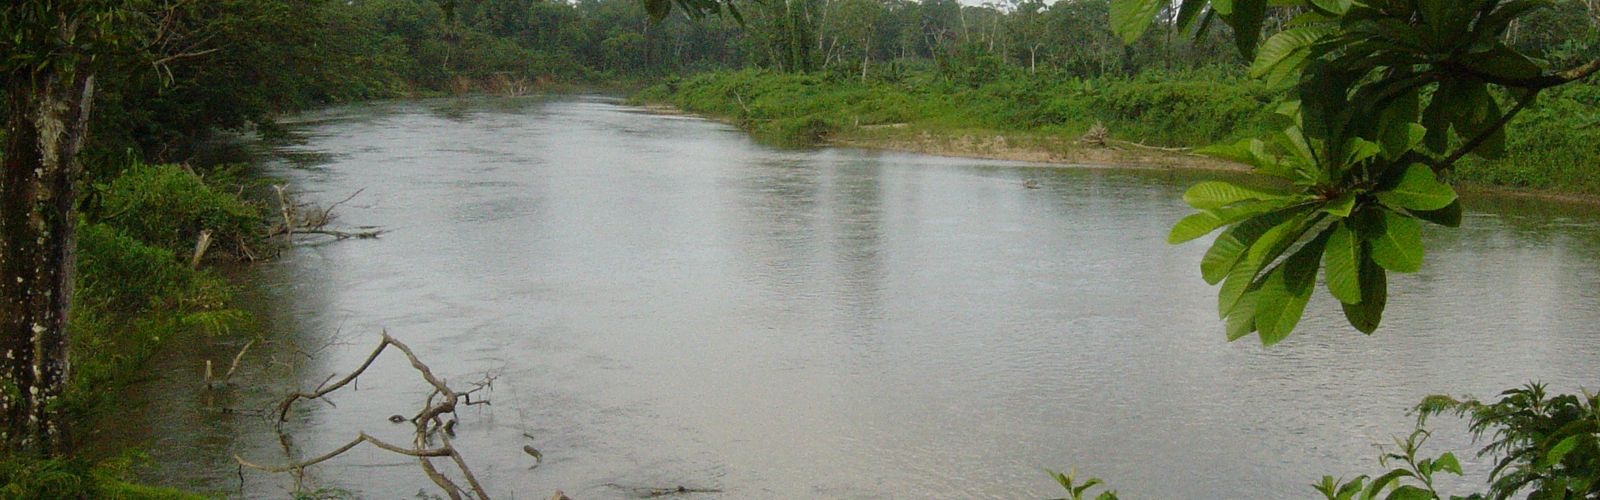 
Vista del Río Platano desde la comunidad Miskito.